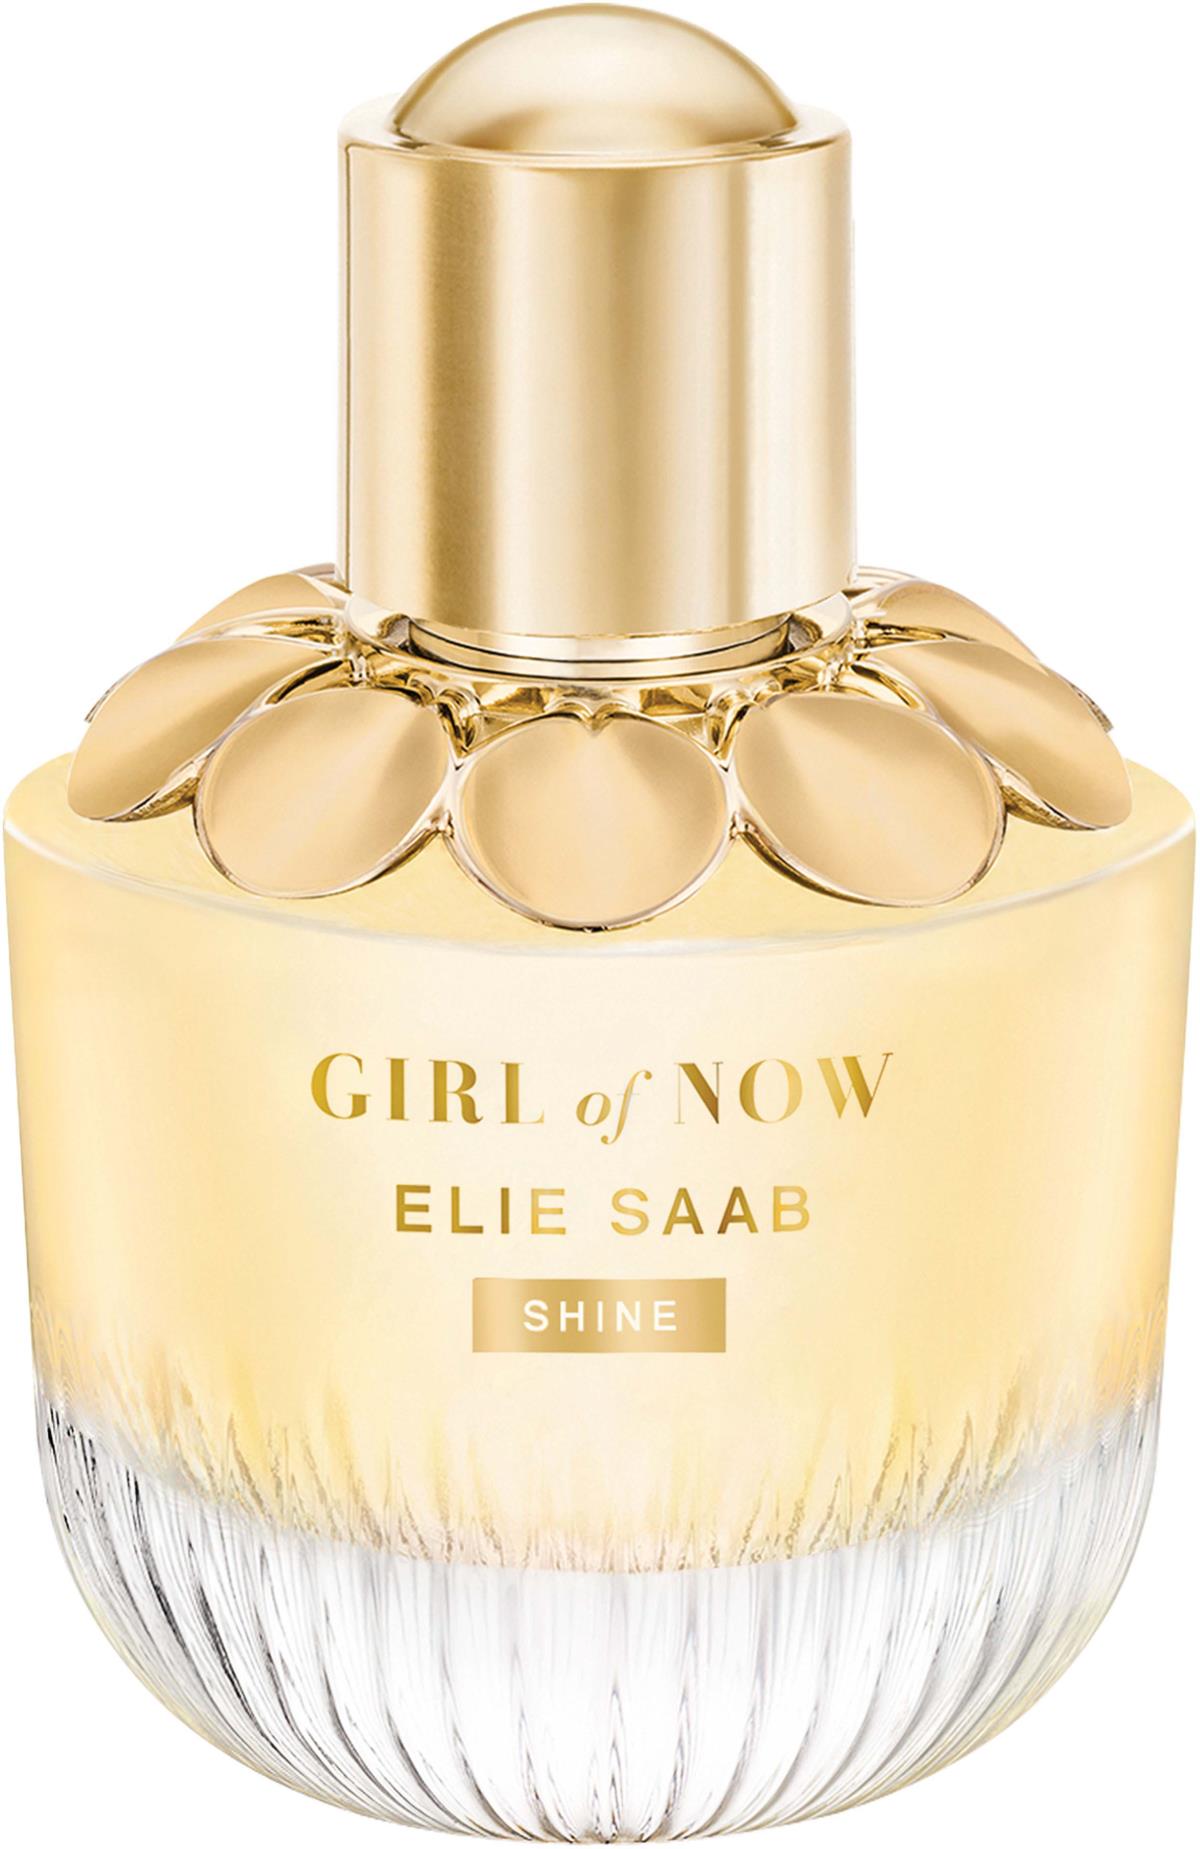 Now De Eau Saab of Elie Girl ml 50 Shine Parfum